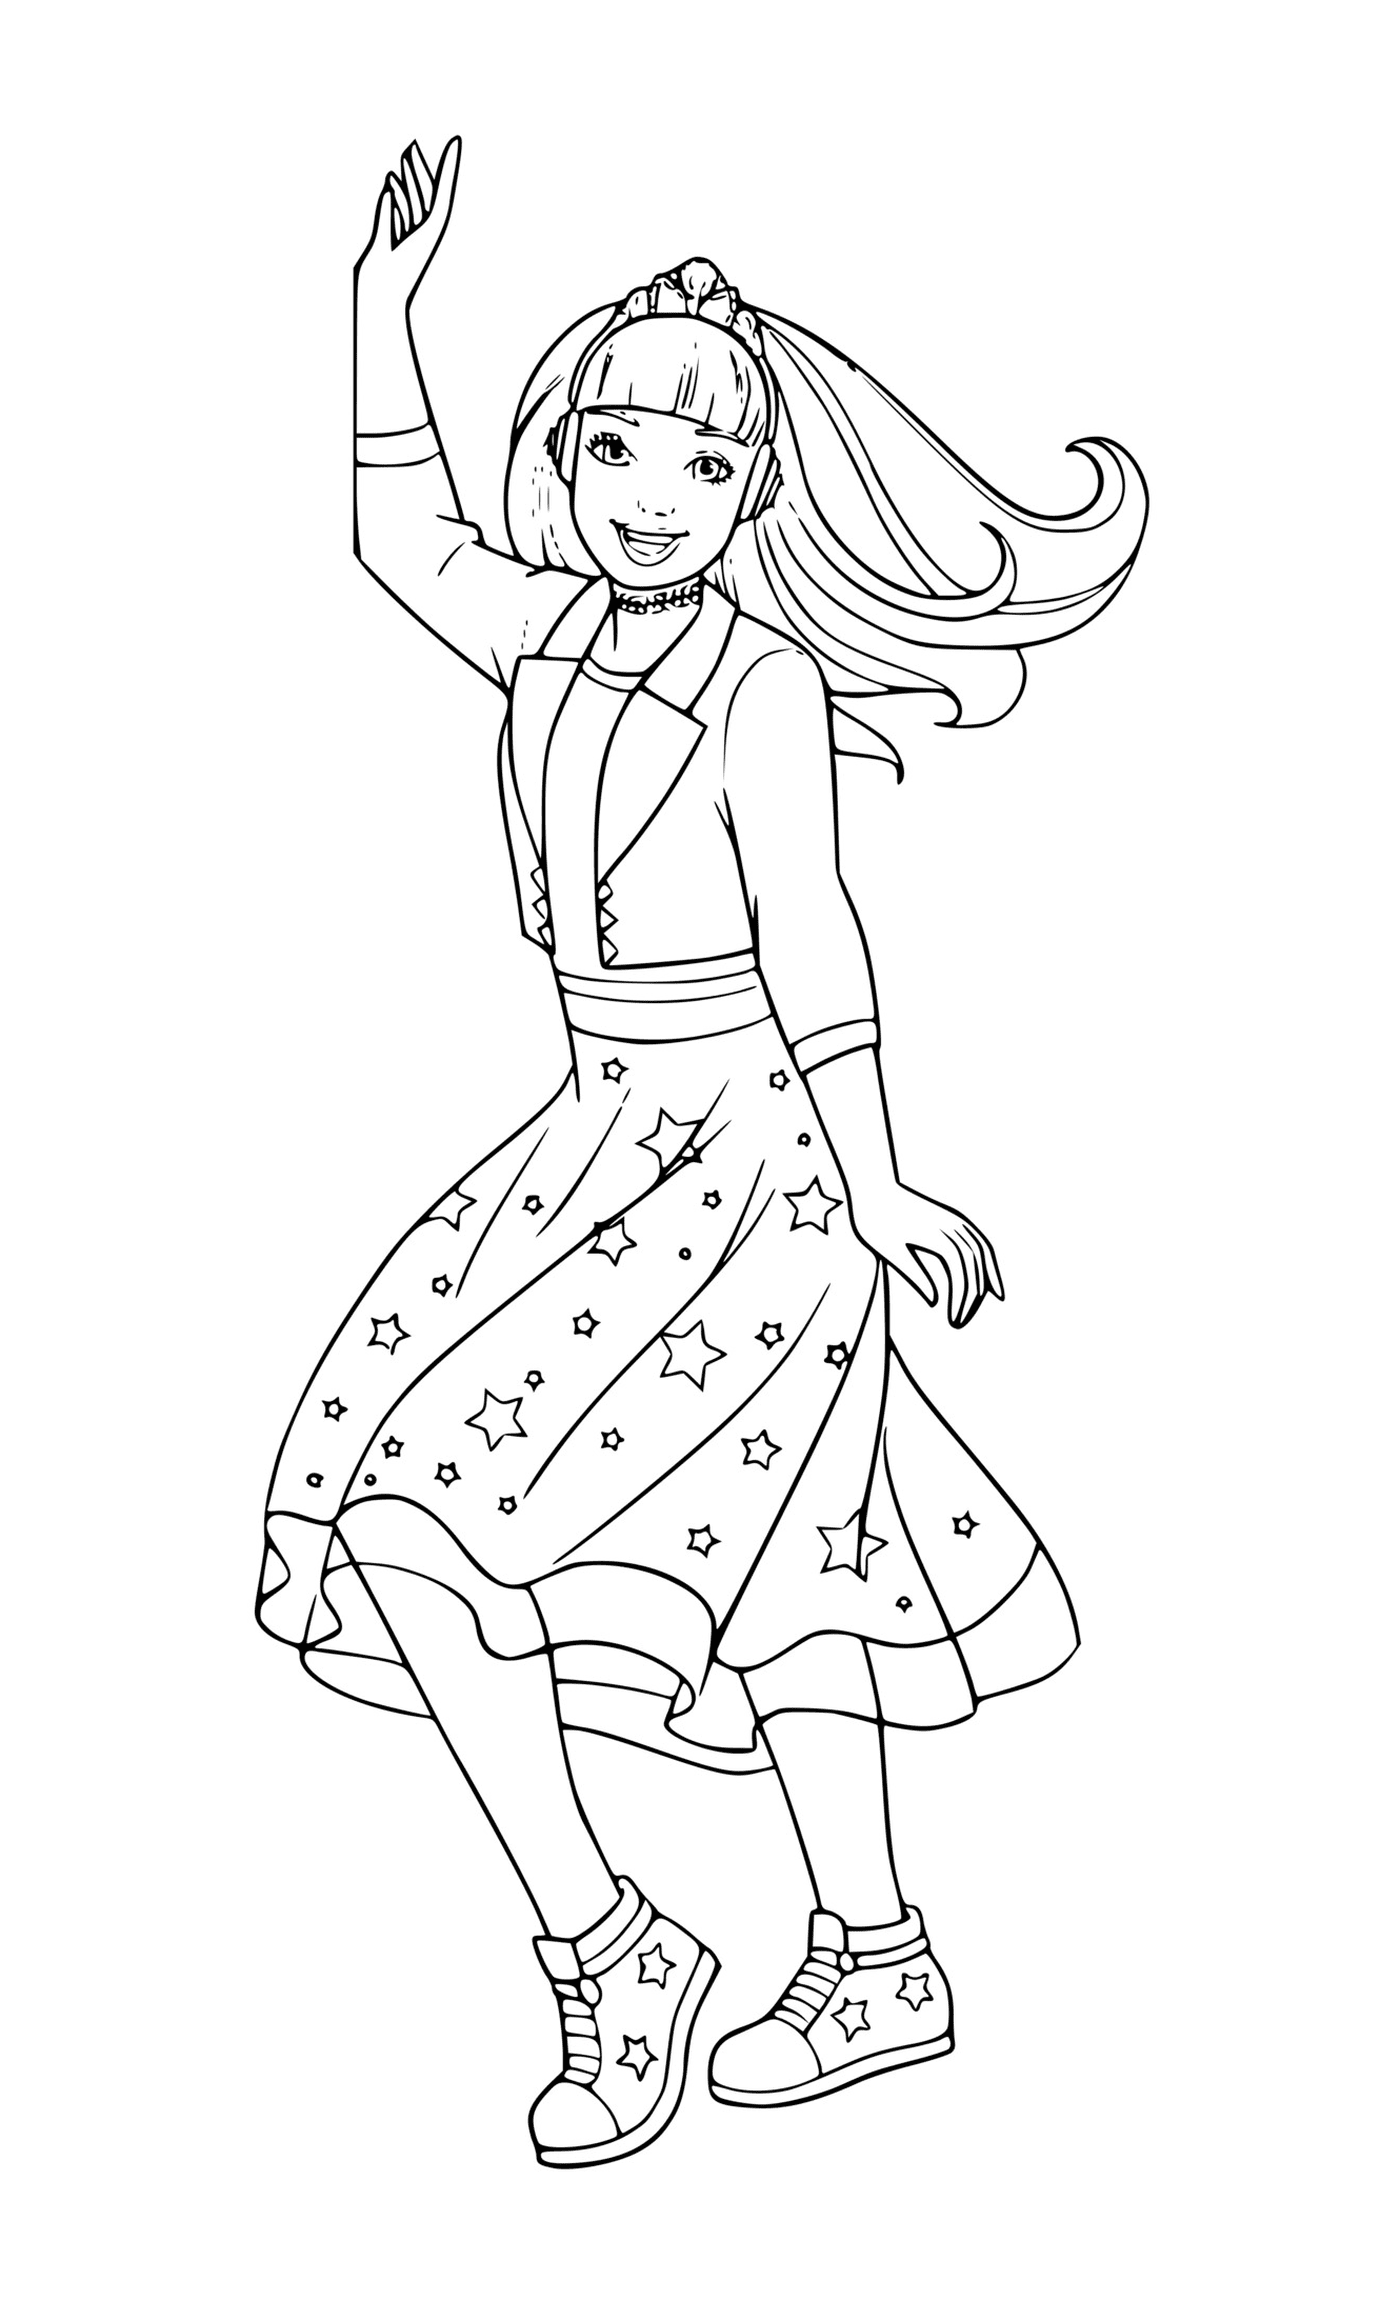  Девушка в звездном платье танцует 